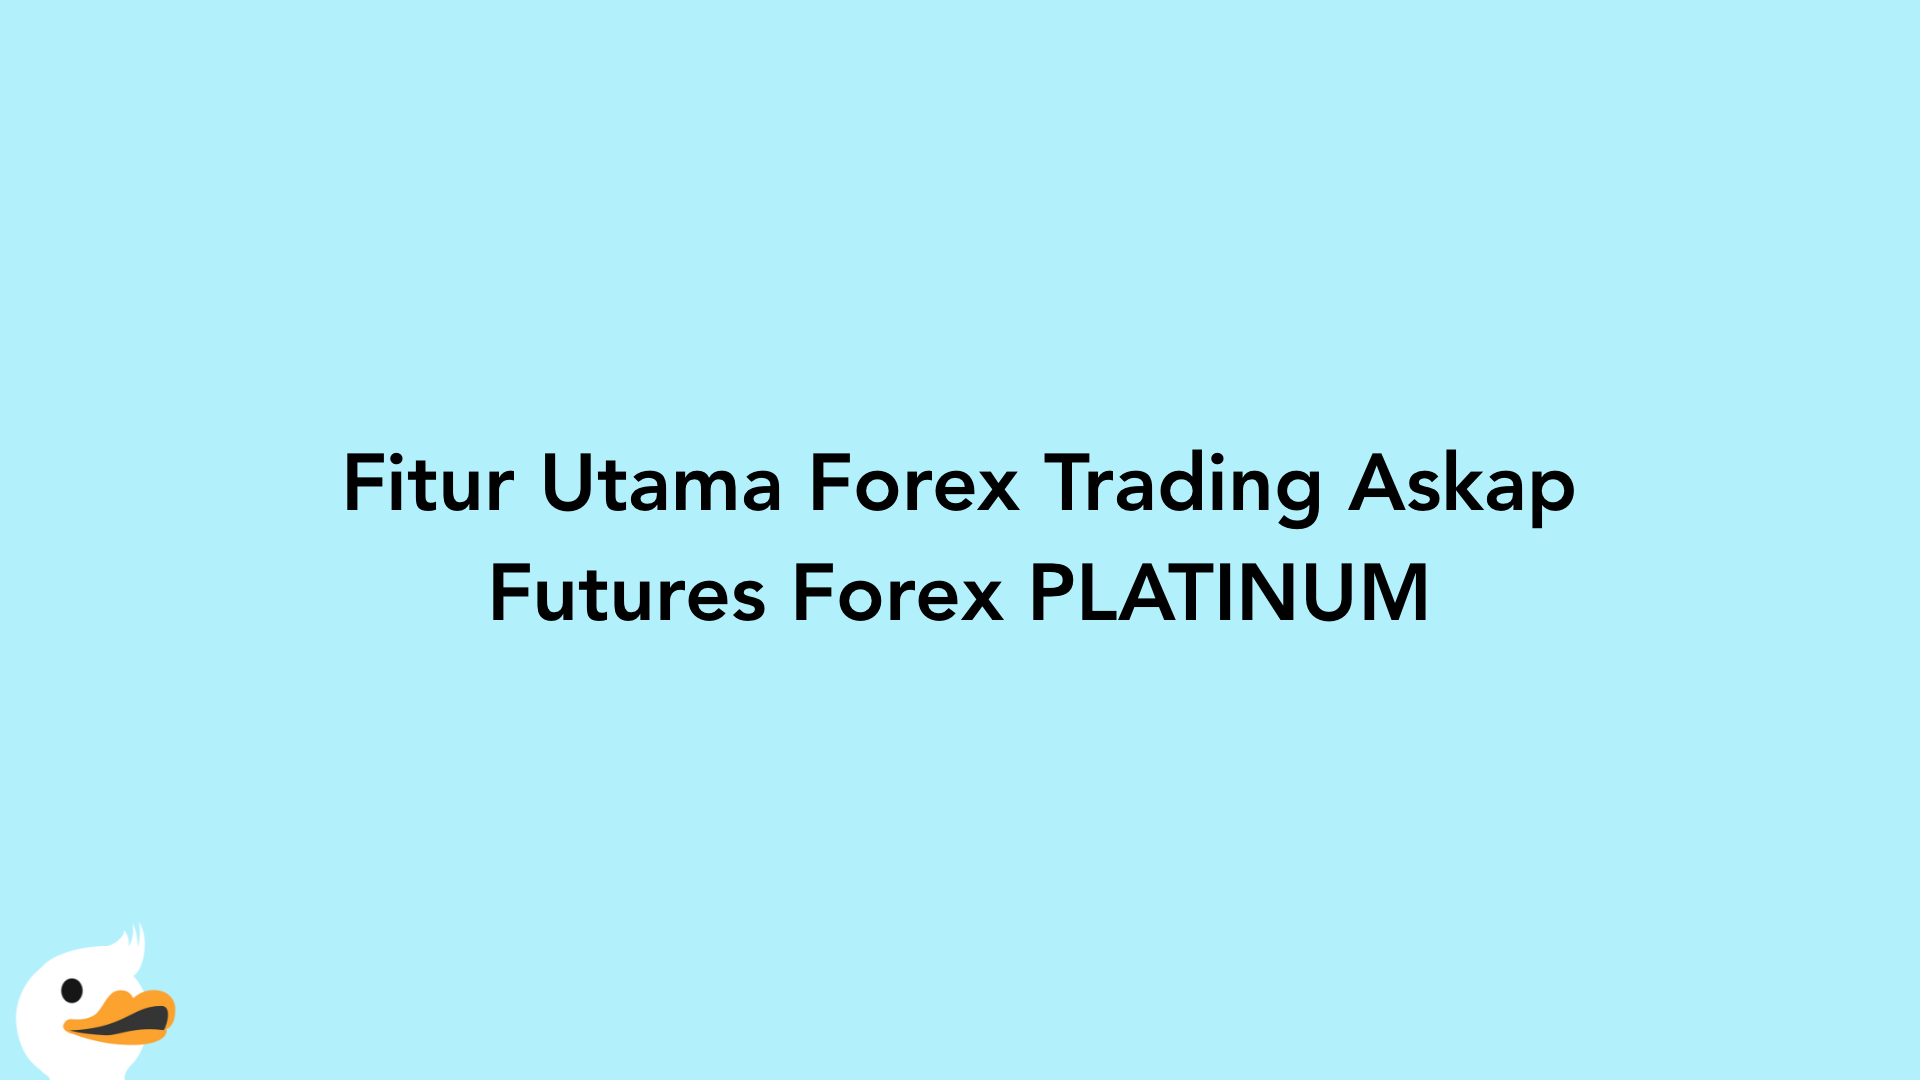 Fitur Utama Forex Trading Askap Futures Forex PLATINUM